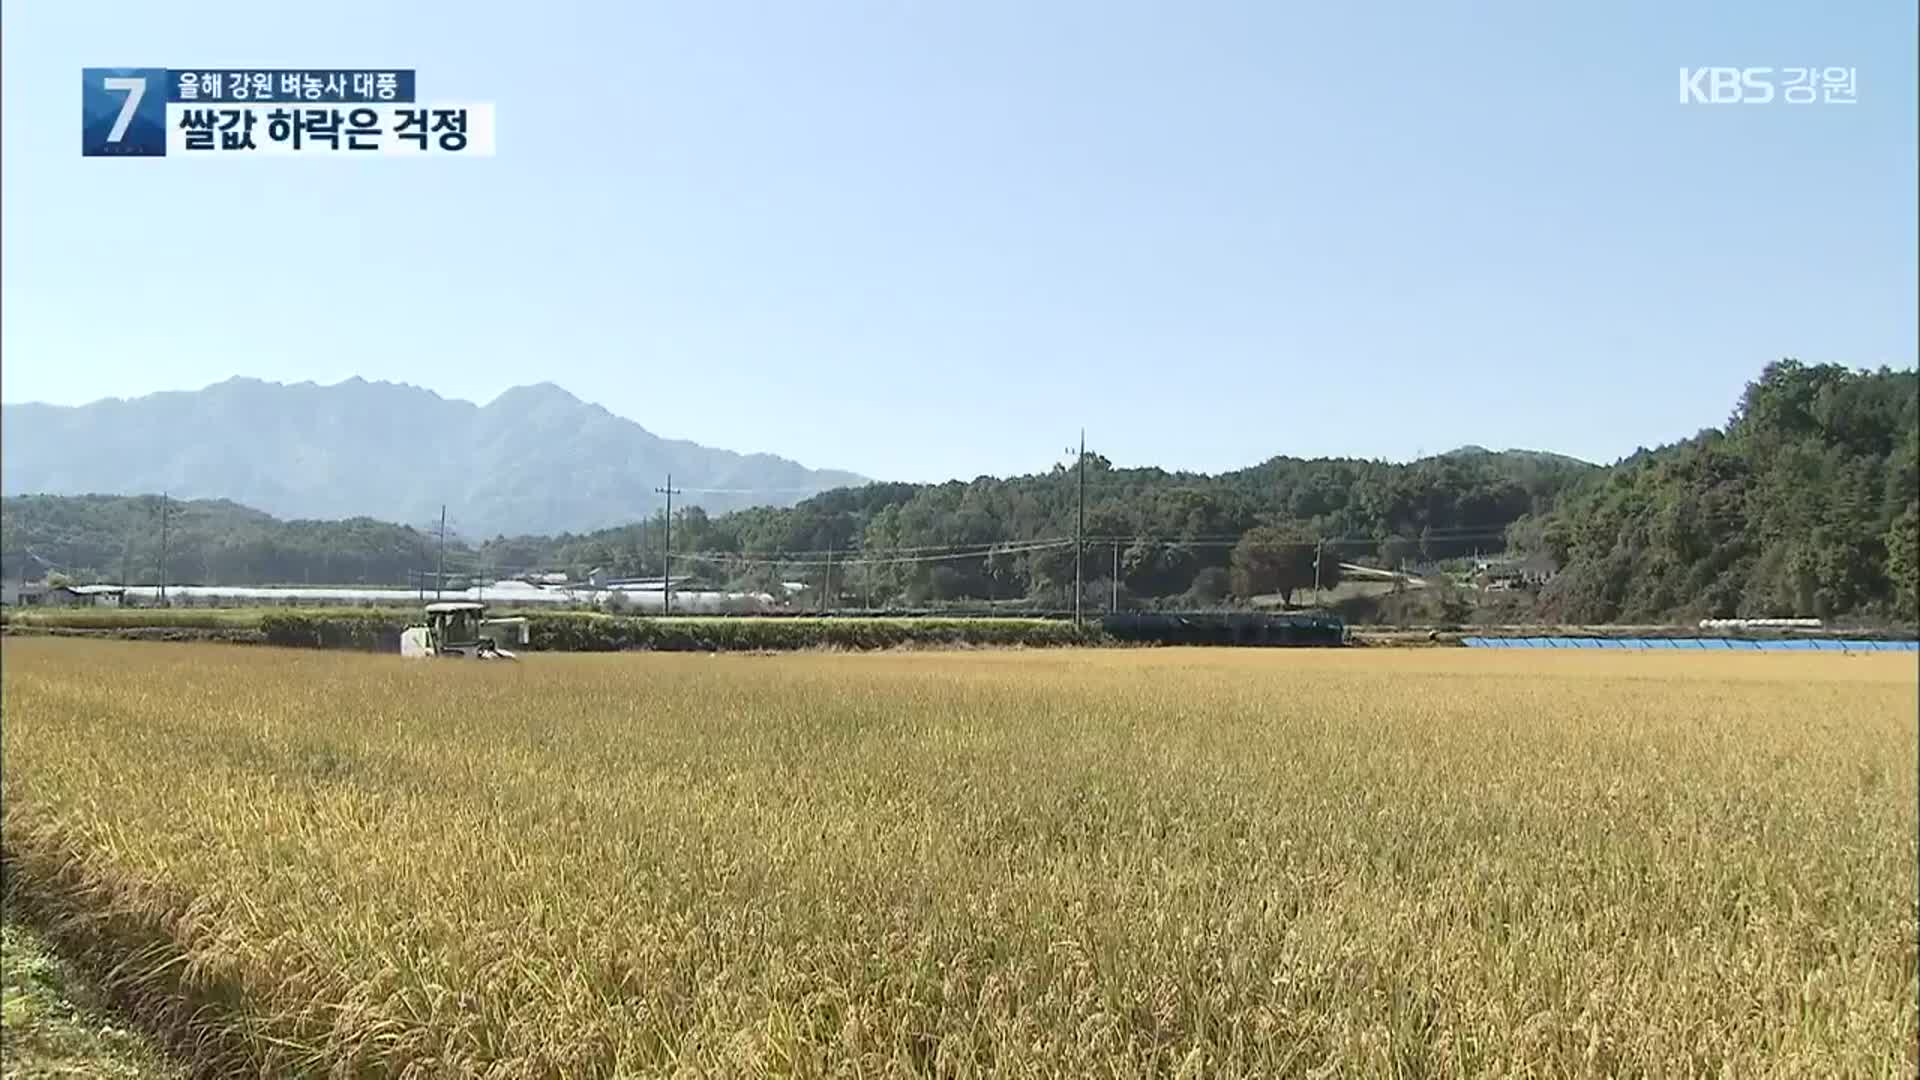 올해 강원 벼농사 대풍…“쌀값은 걱정”